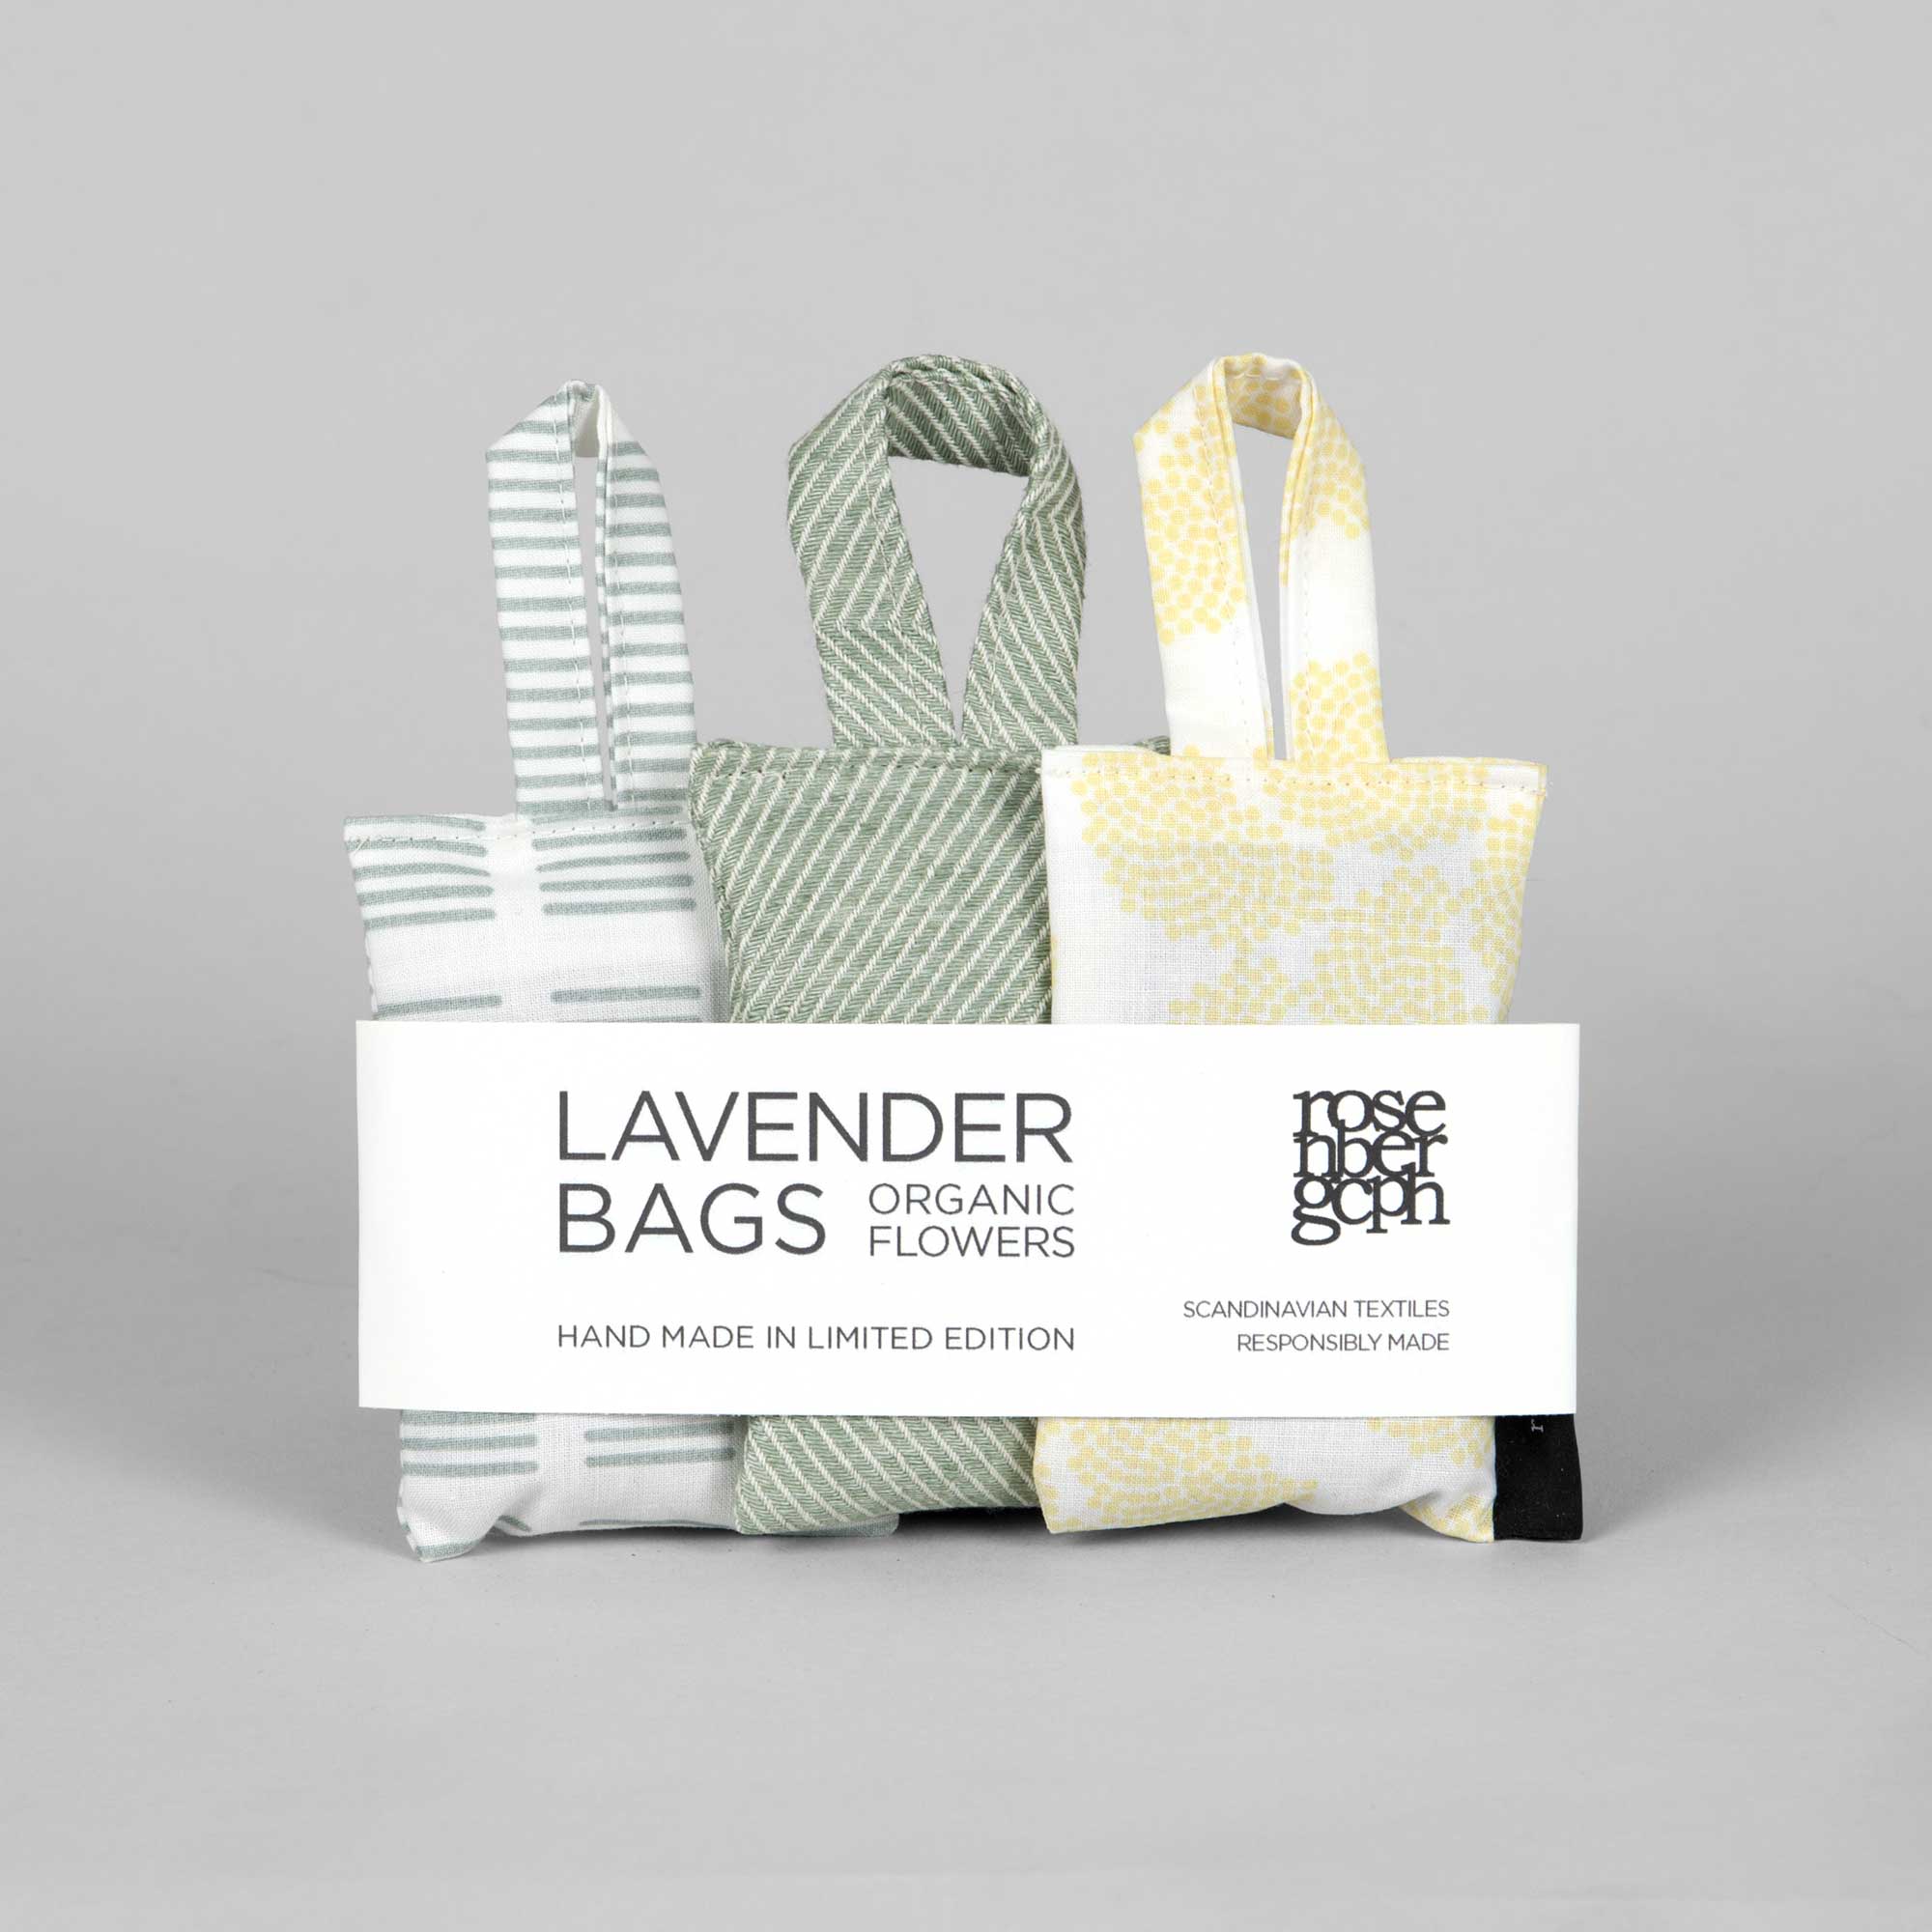 Lavender bags, green selection, design by Anne Rosenberg, RosenbergCph